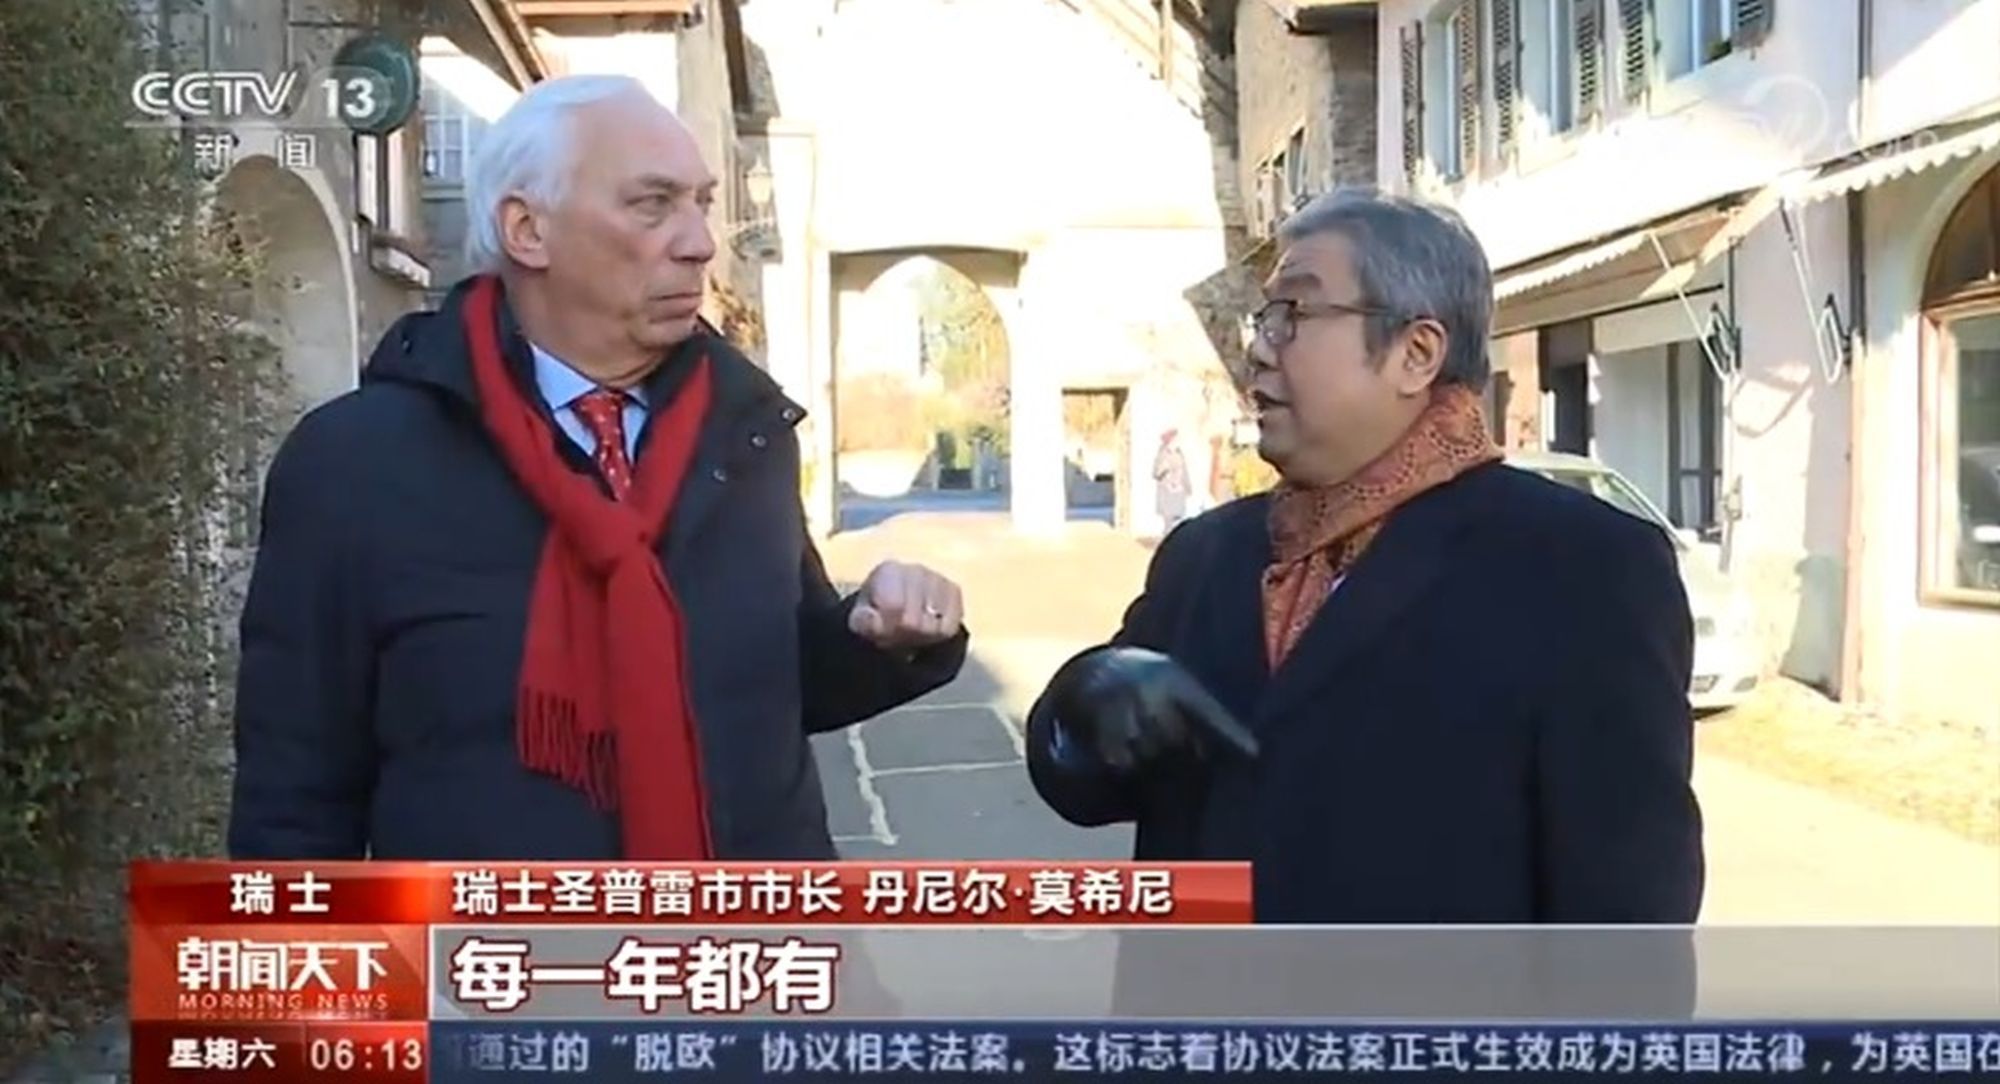 Le syndic Daniel Mosini en pleine conversation avec Yuan Zhao, dans une rue de Saint-Prex.